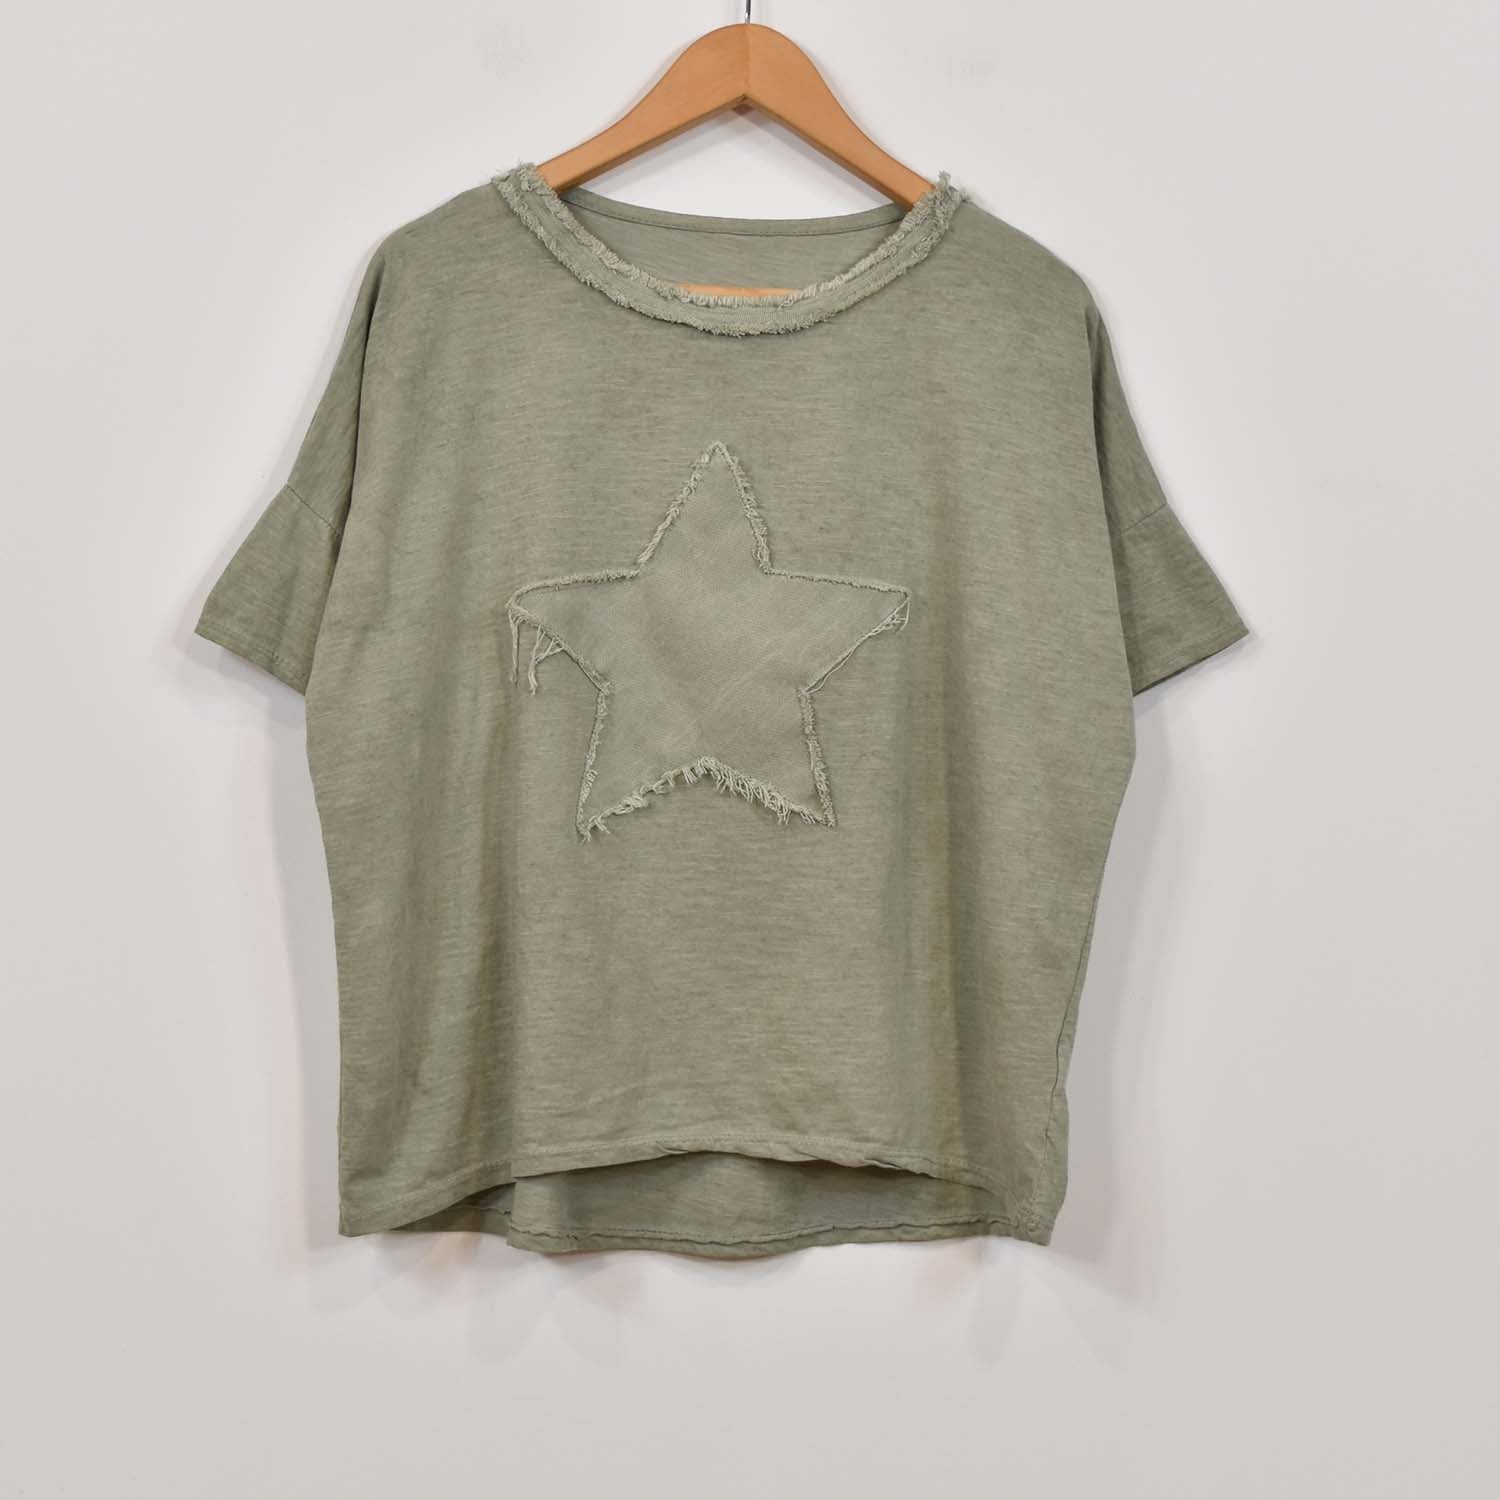 Kaki fringed star t-shirt